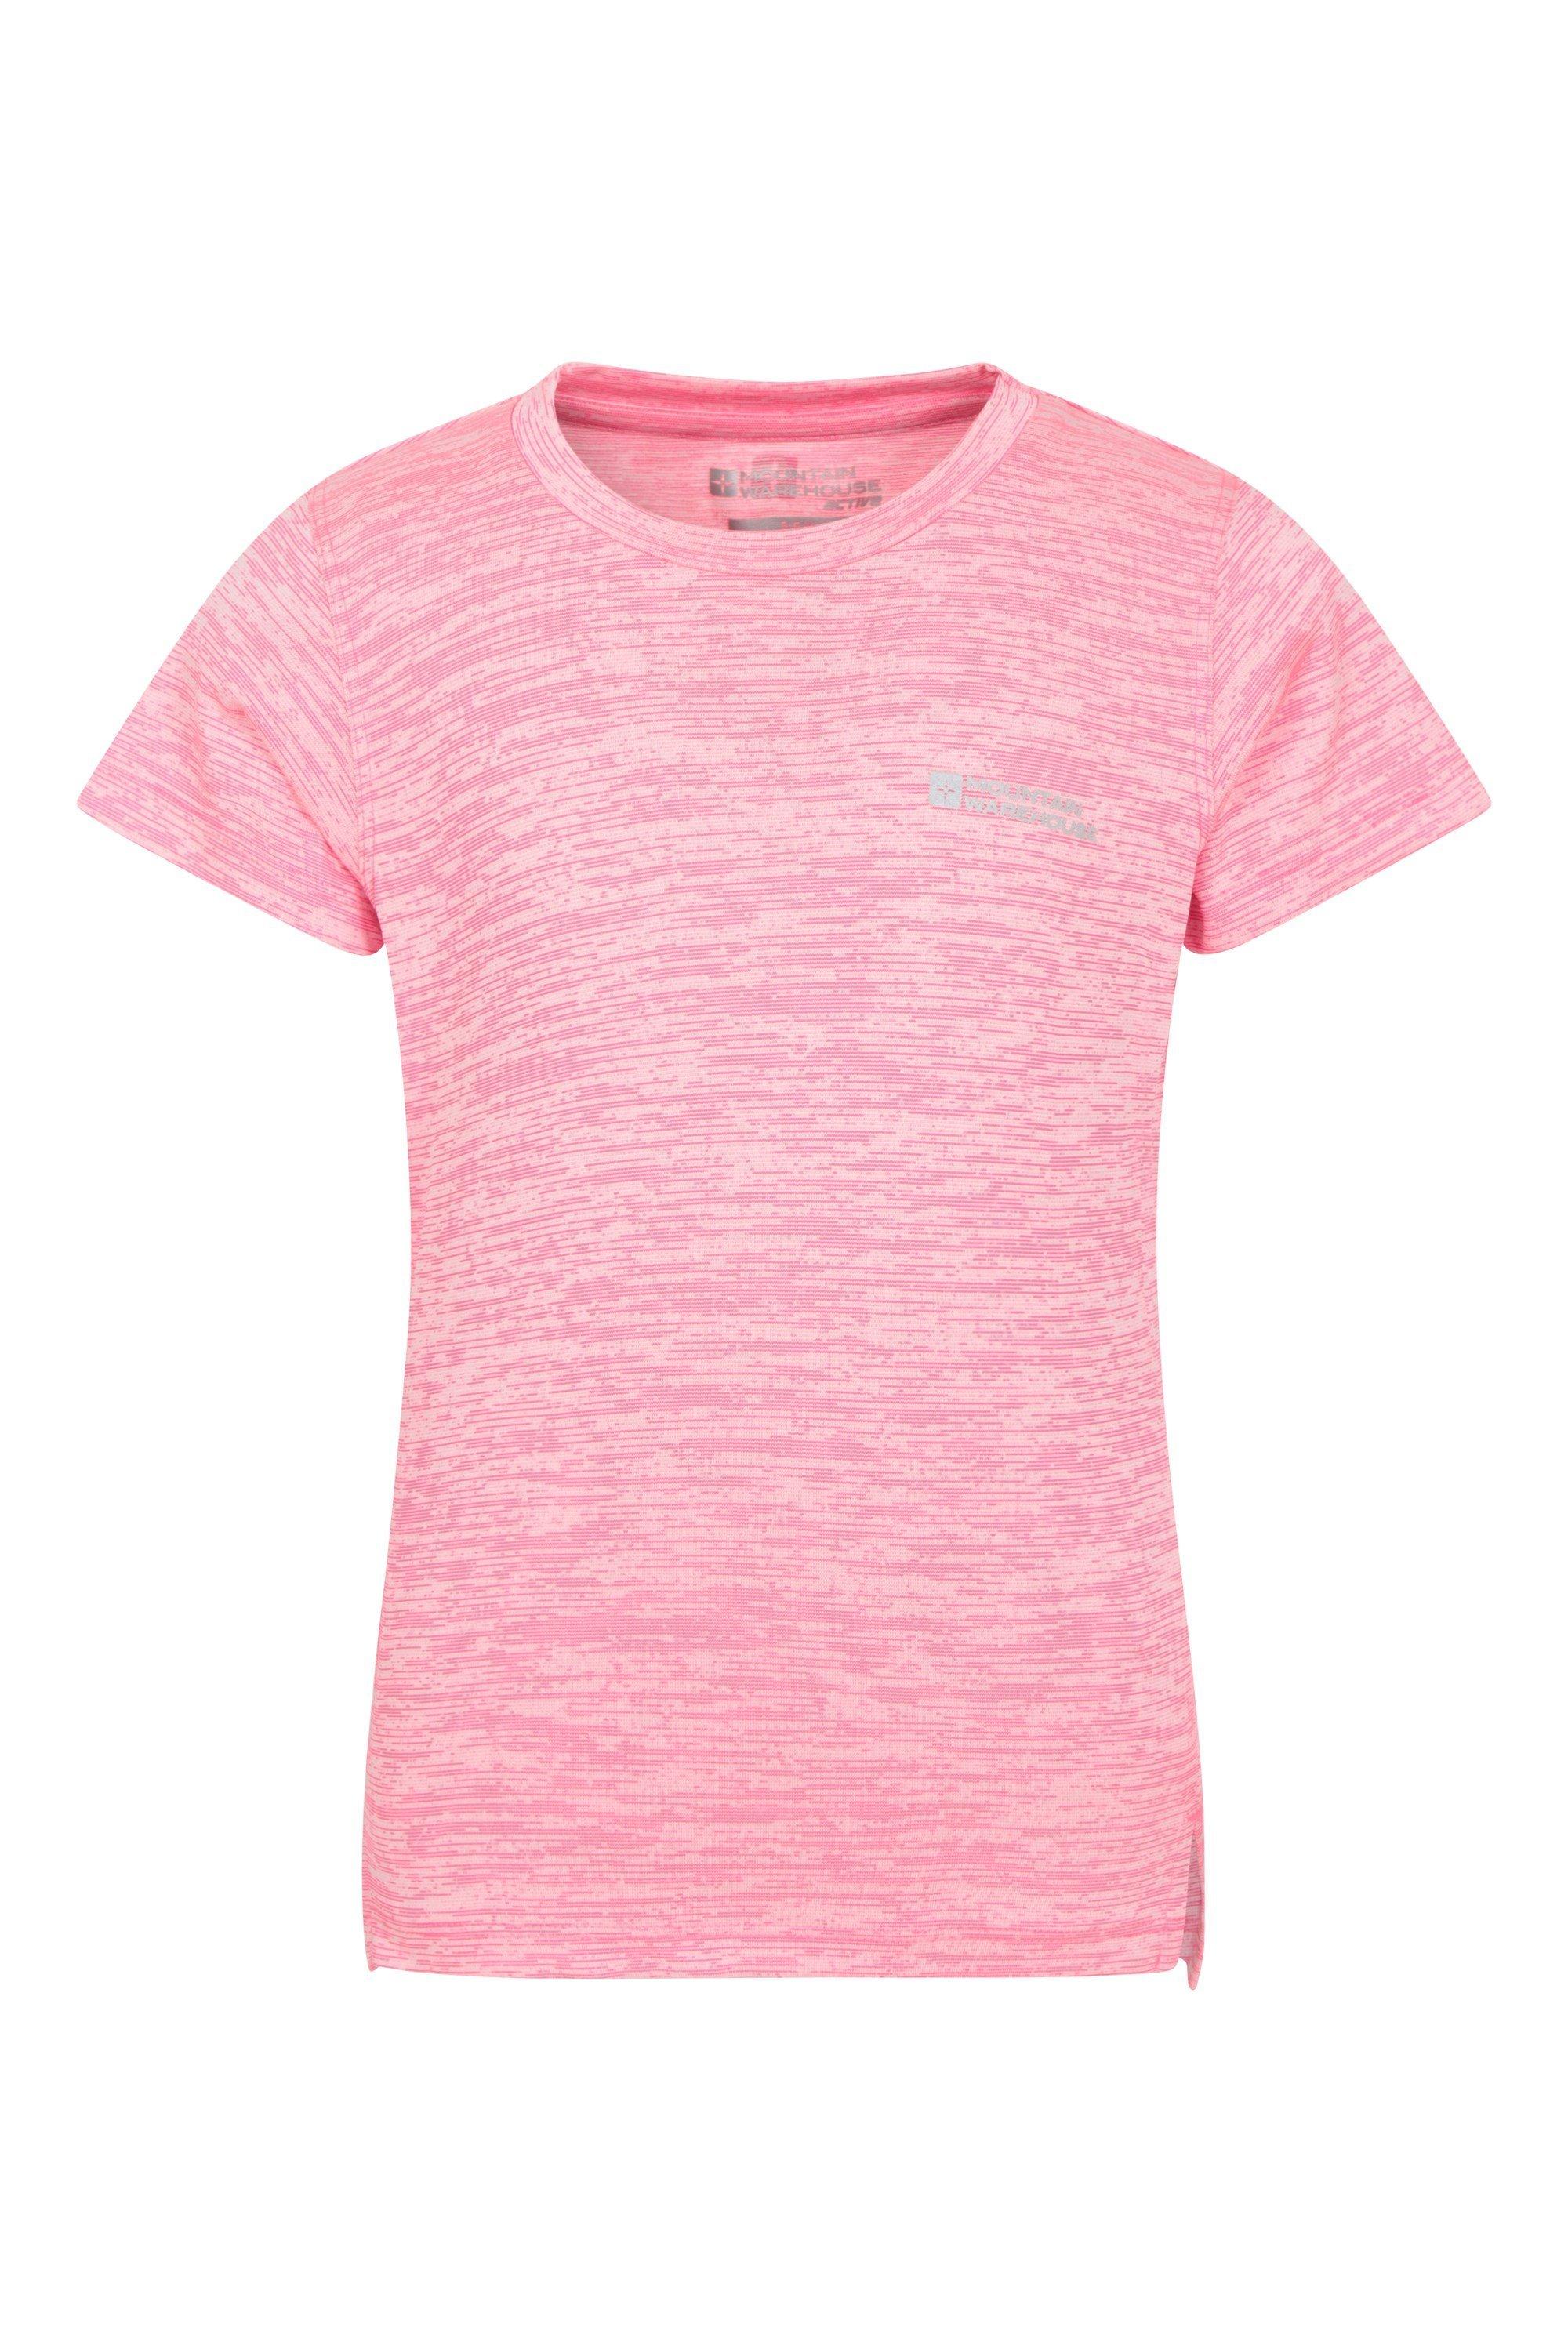 Простая полевая футболка, повседневный дышащий топ Mountain Warehouse, розовый